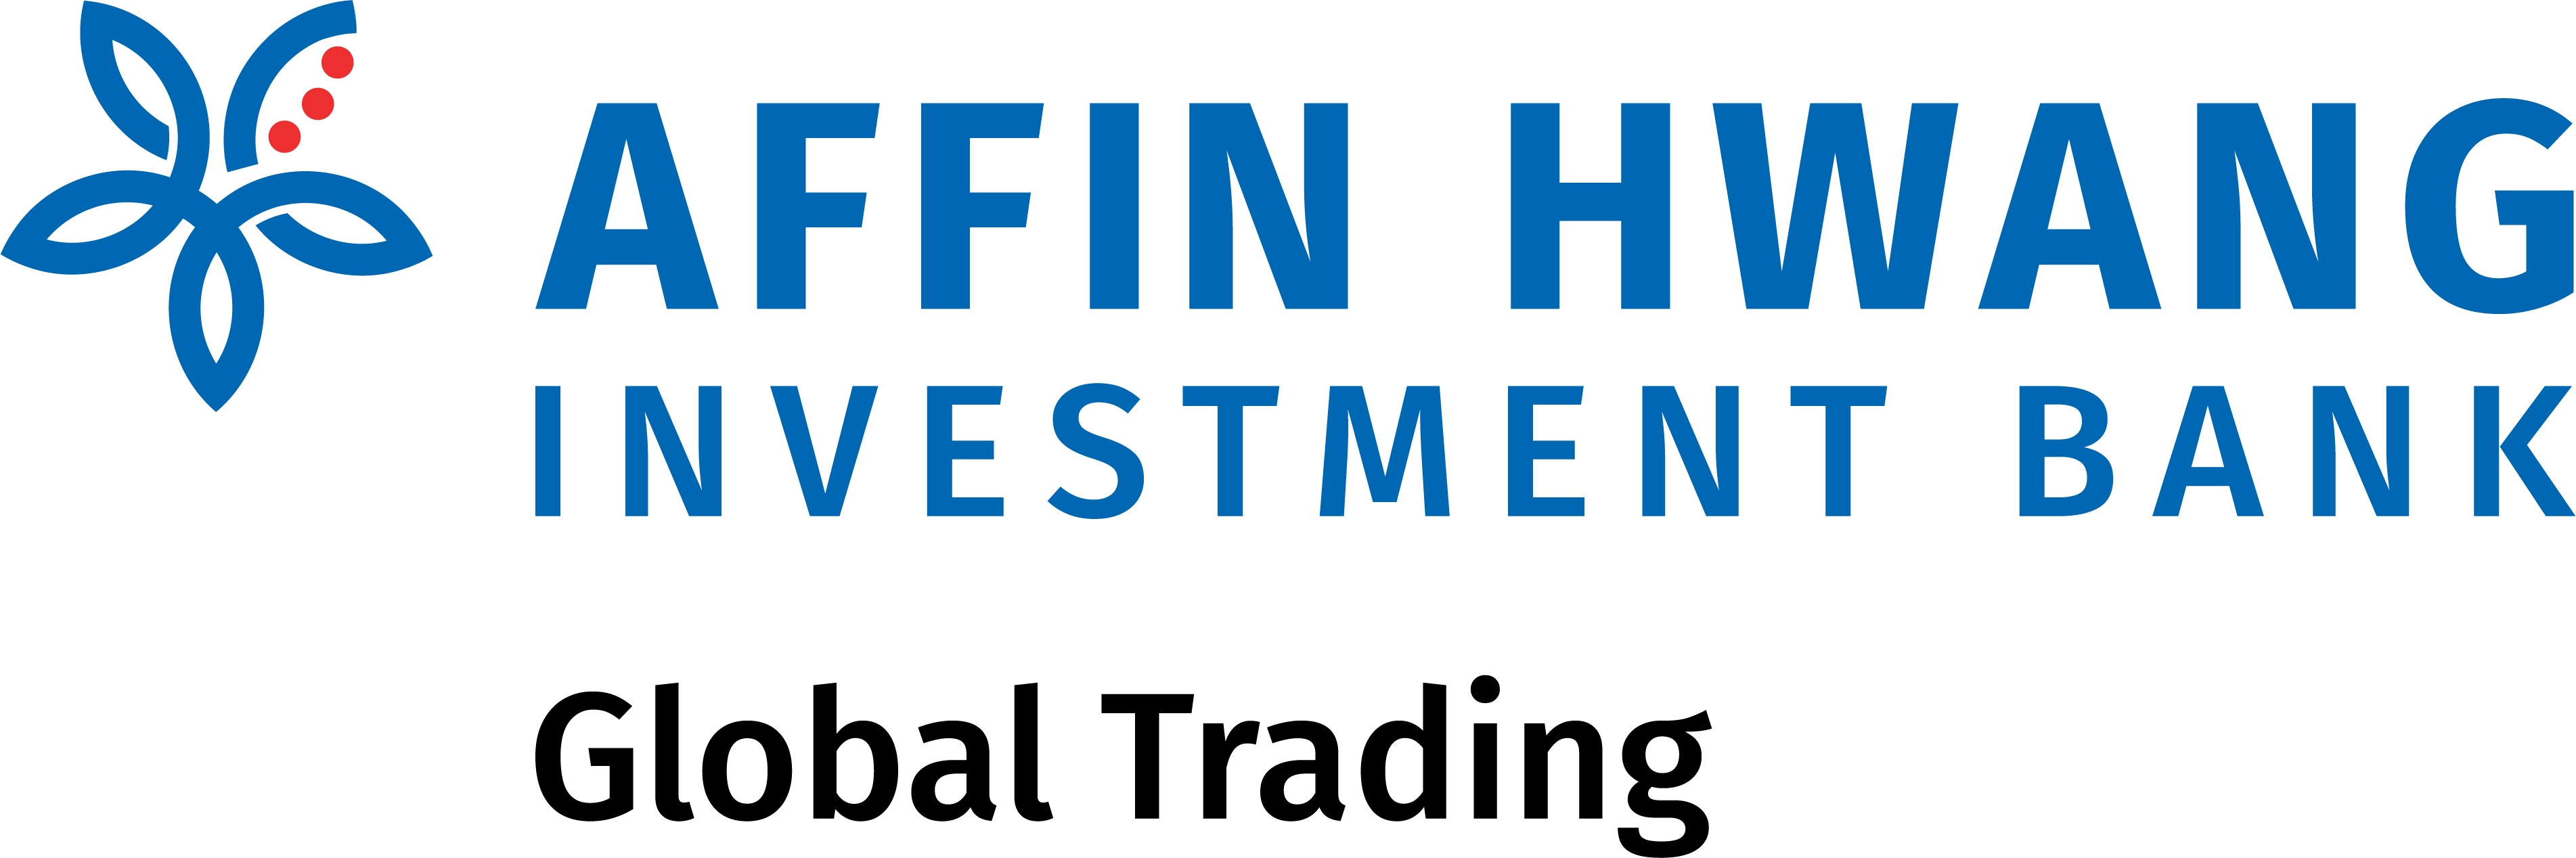 Affin Investment Bank logo